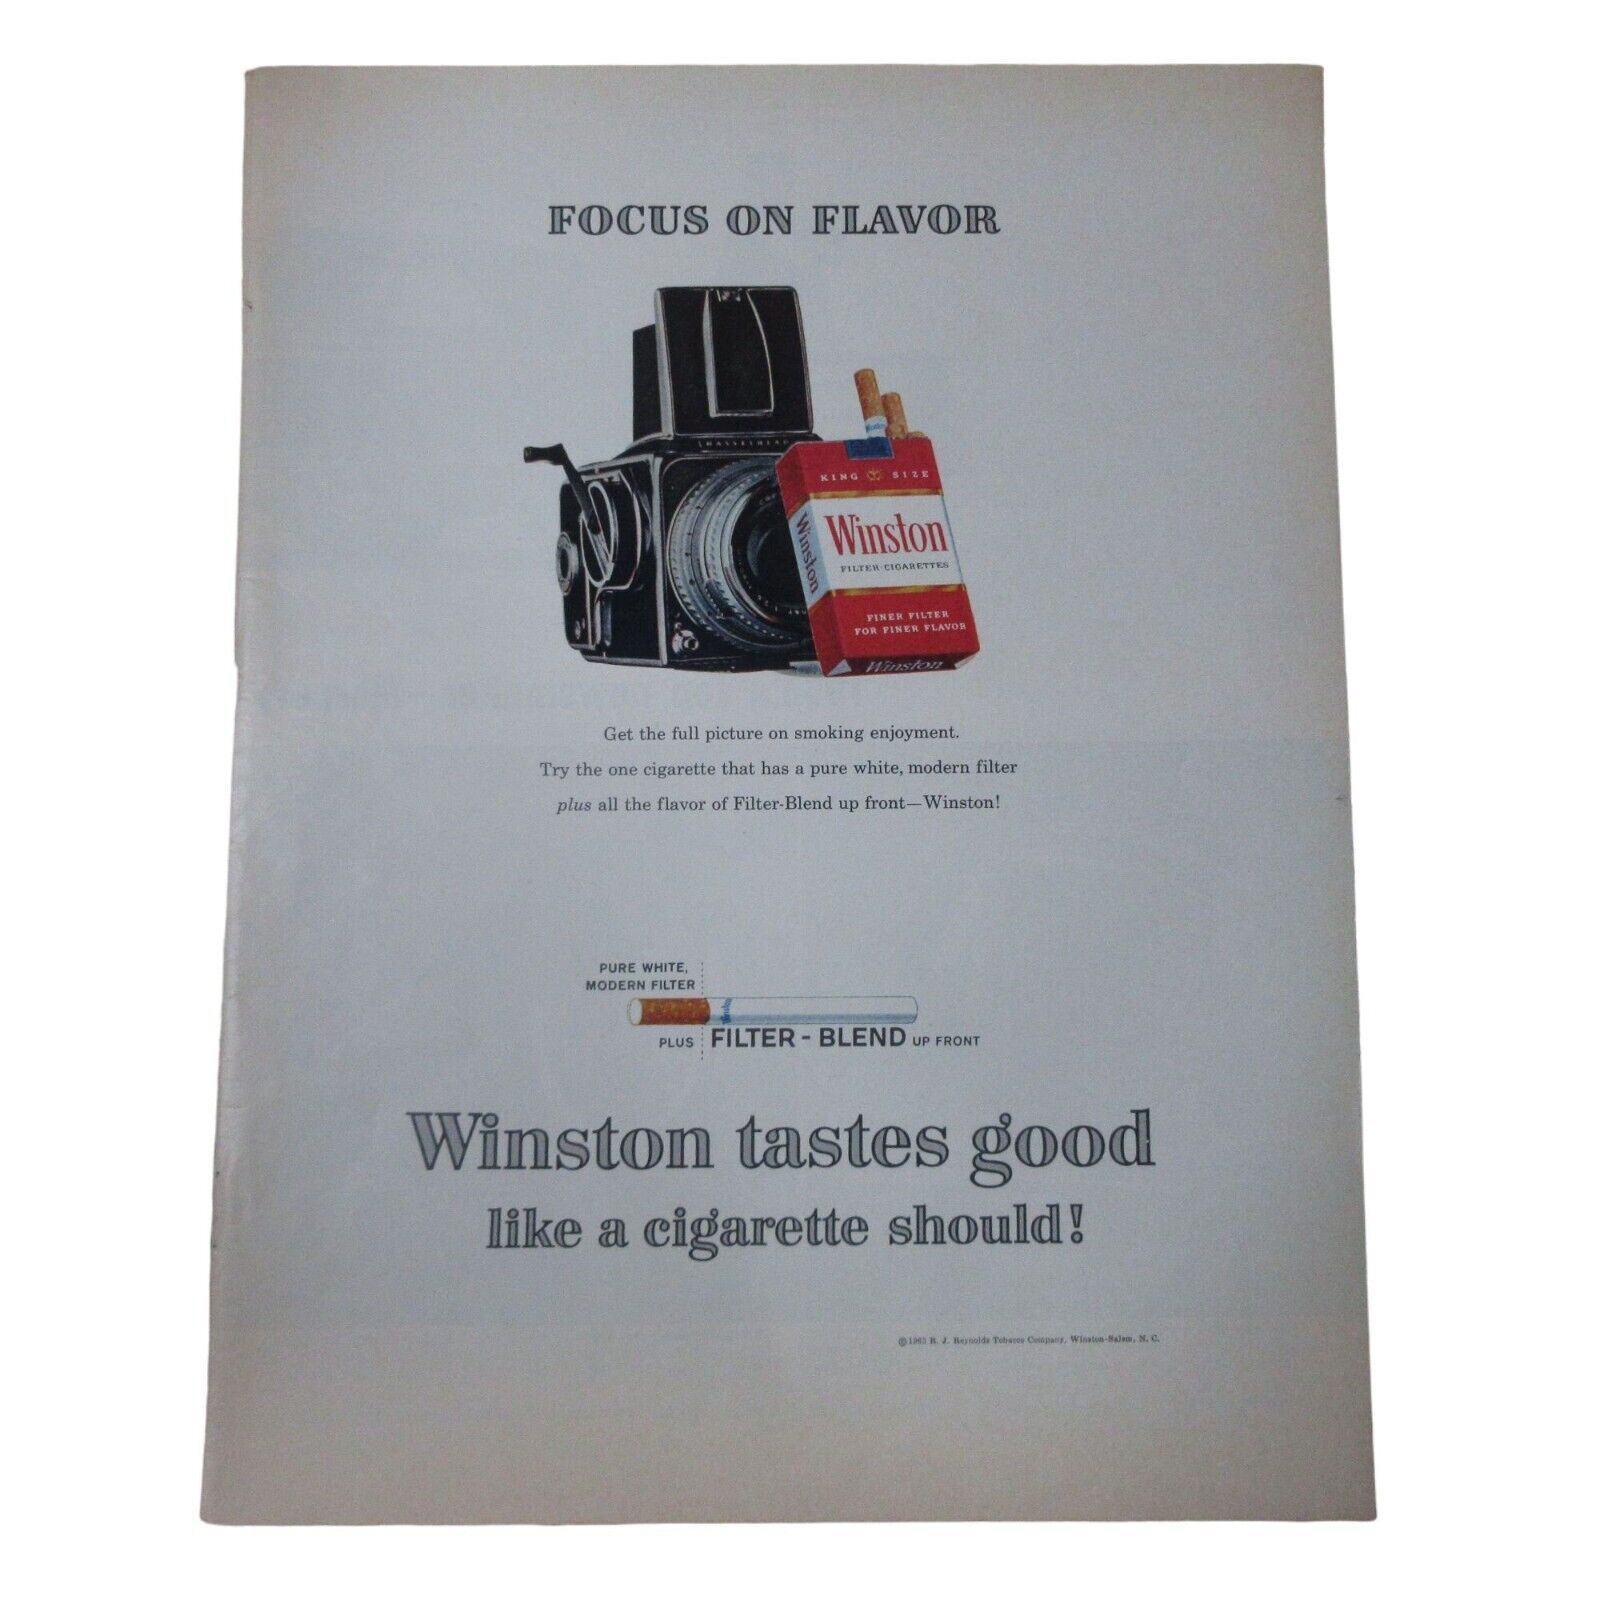 1963 Winston Cigarettes - Camera Focus On Flavor -  Vintage Print Ad